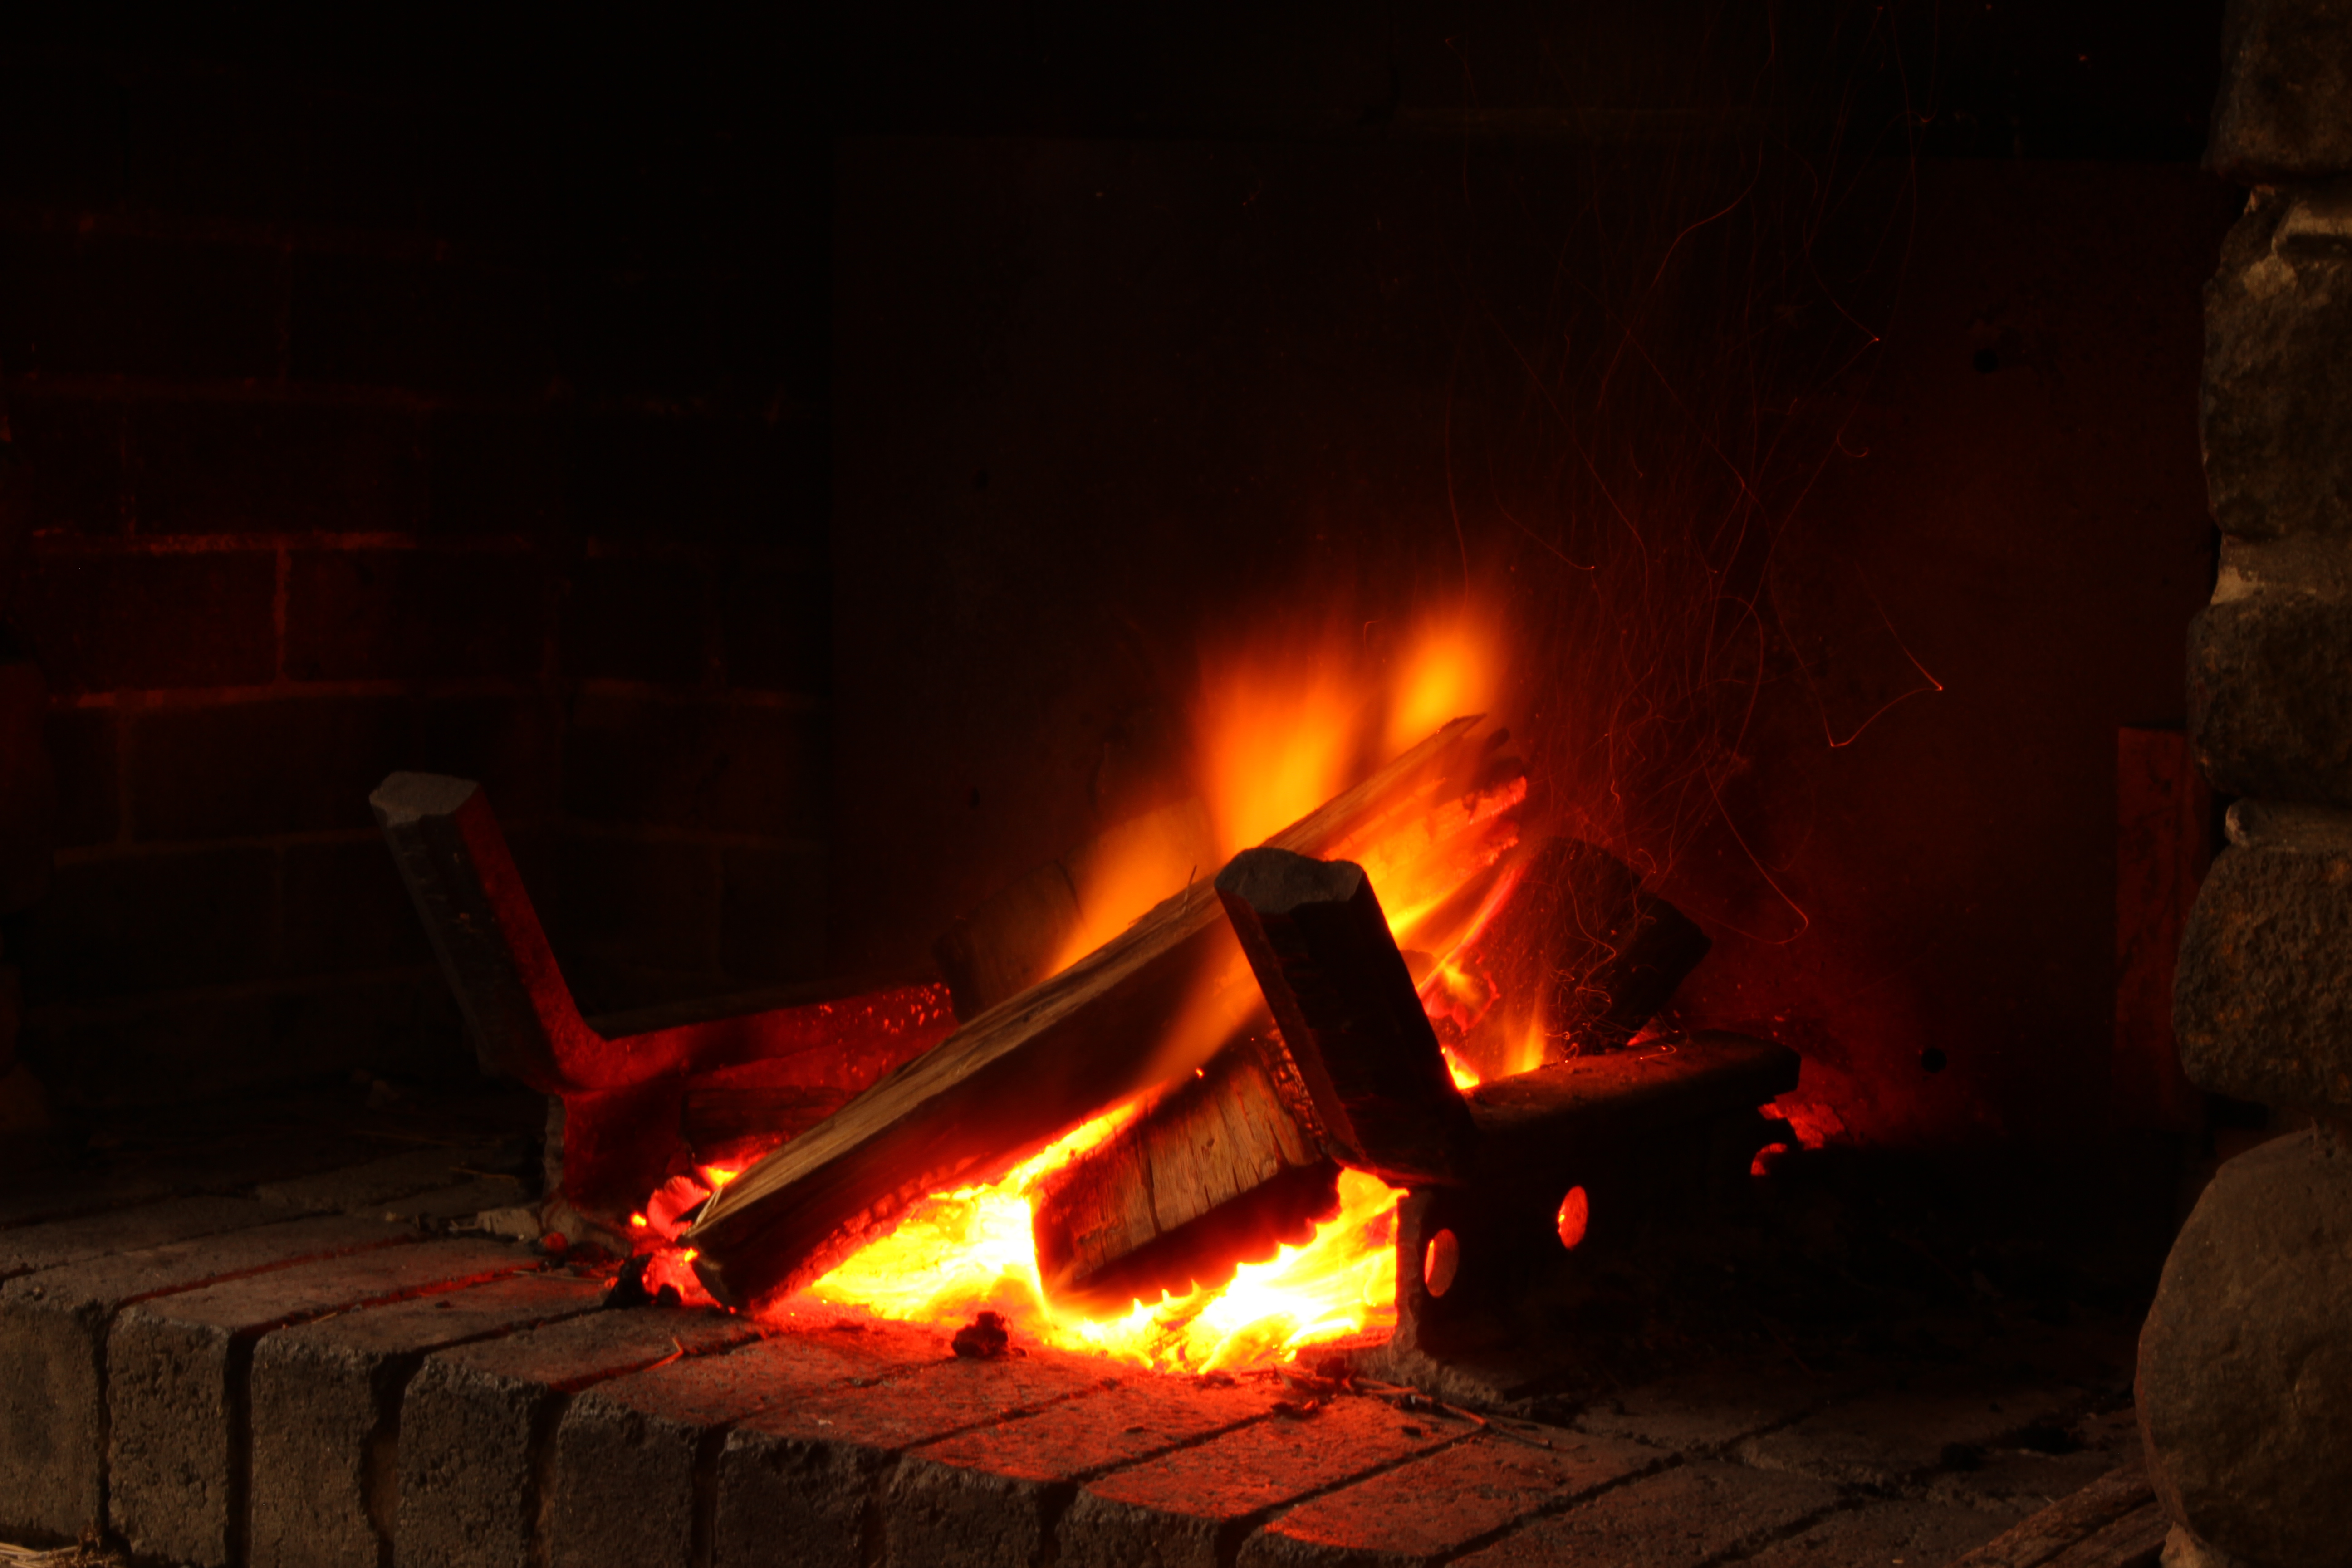 File:Open wood fire.JPG - Wikimedia Commons